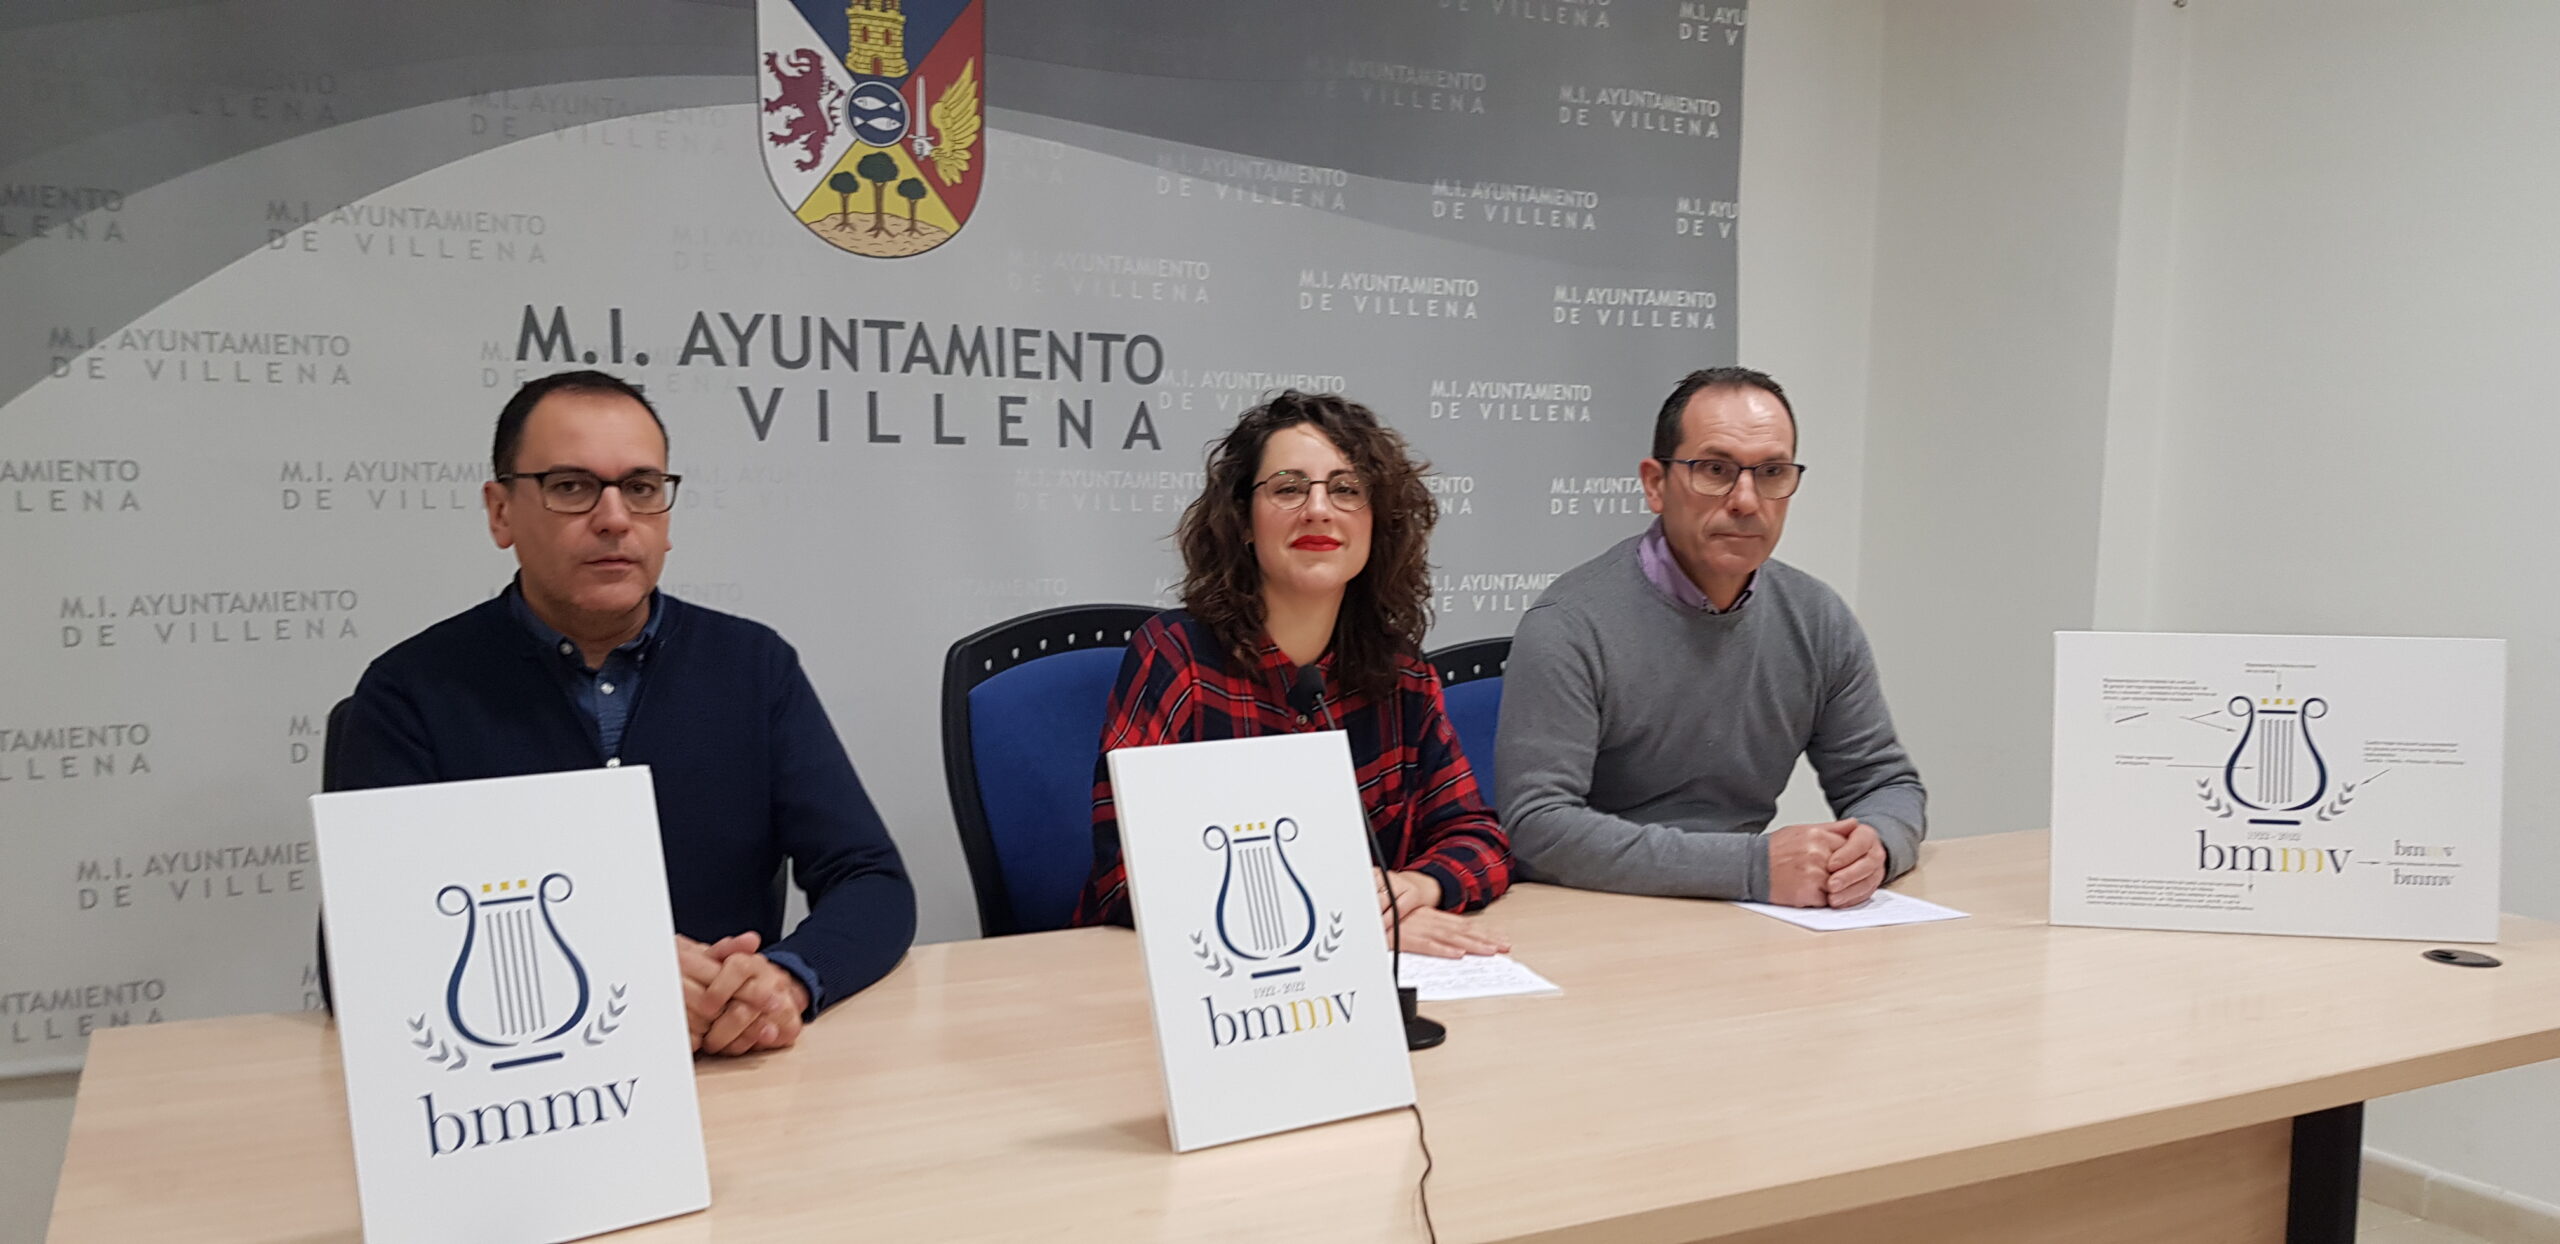 La Banda Municipal de Música de Villena presenta el  logotipo de su centenario